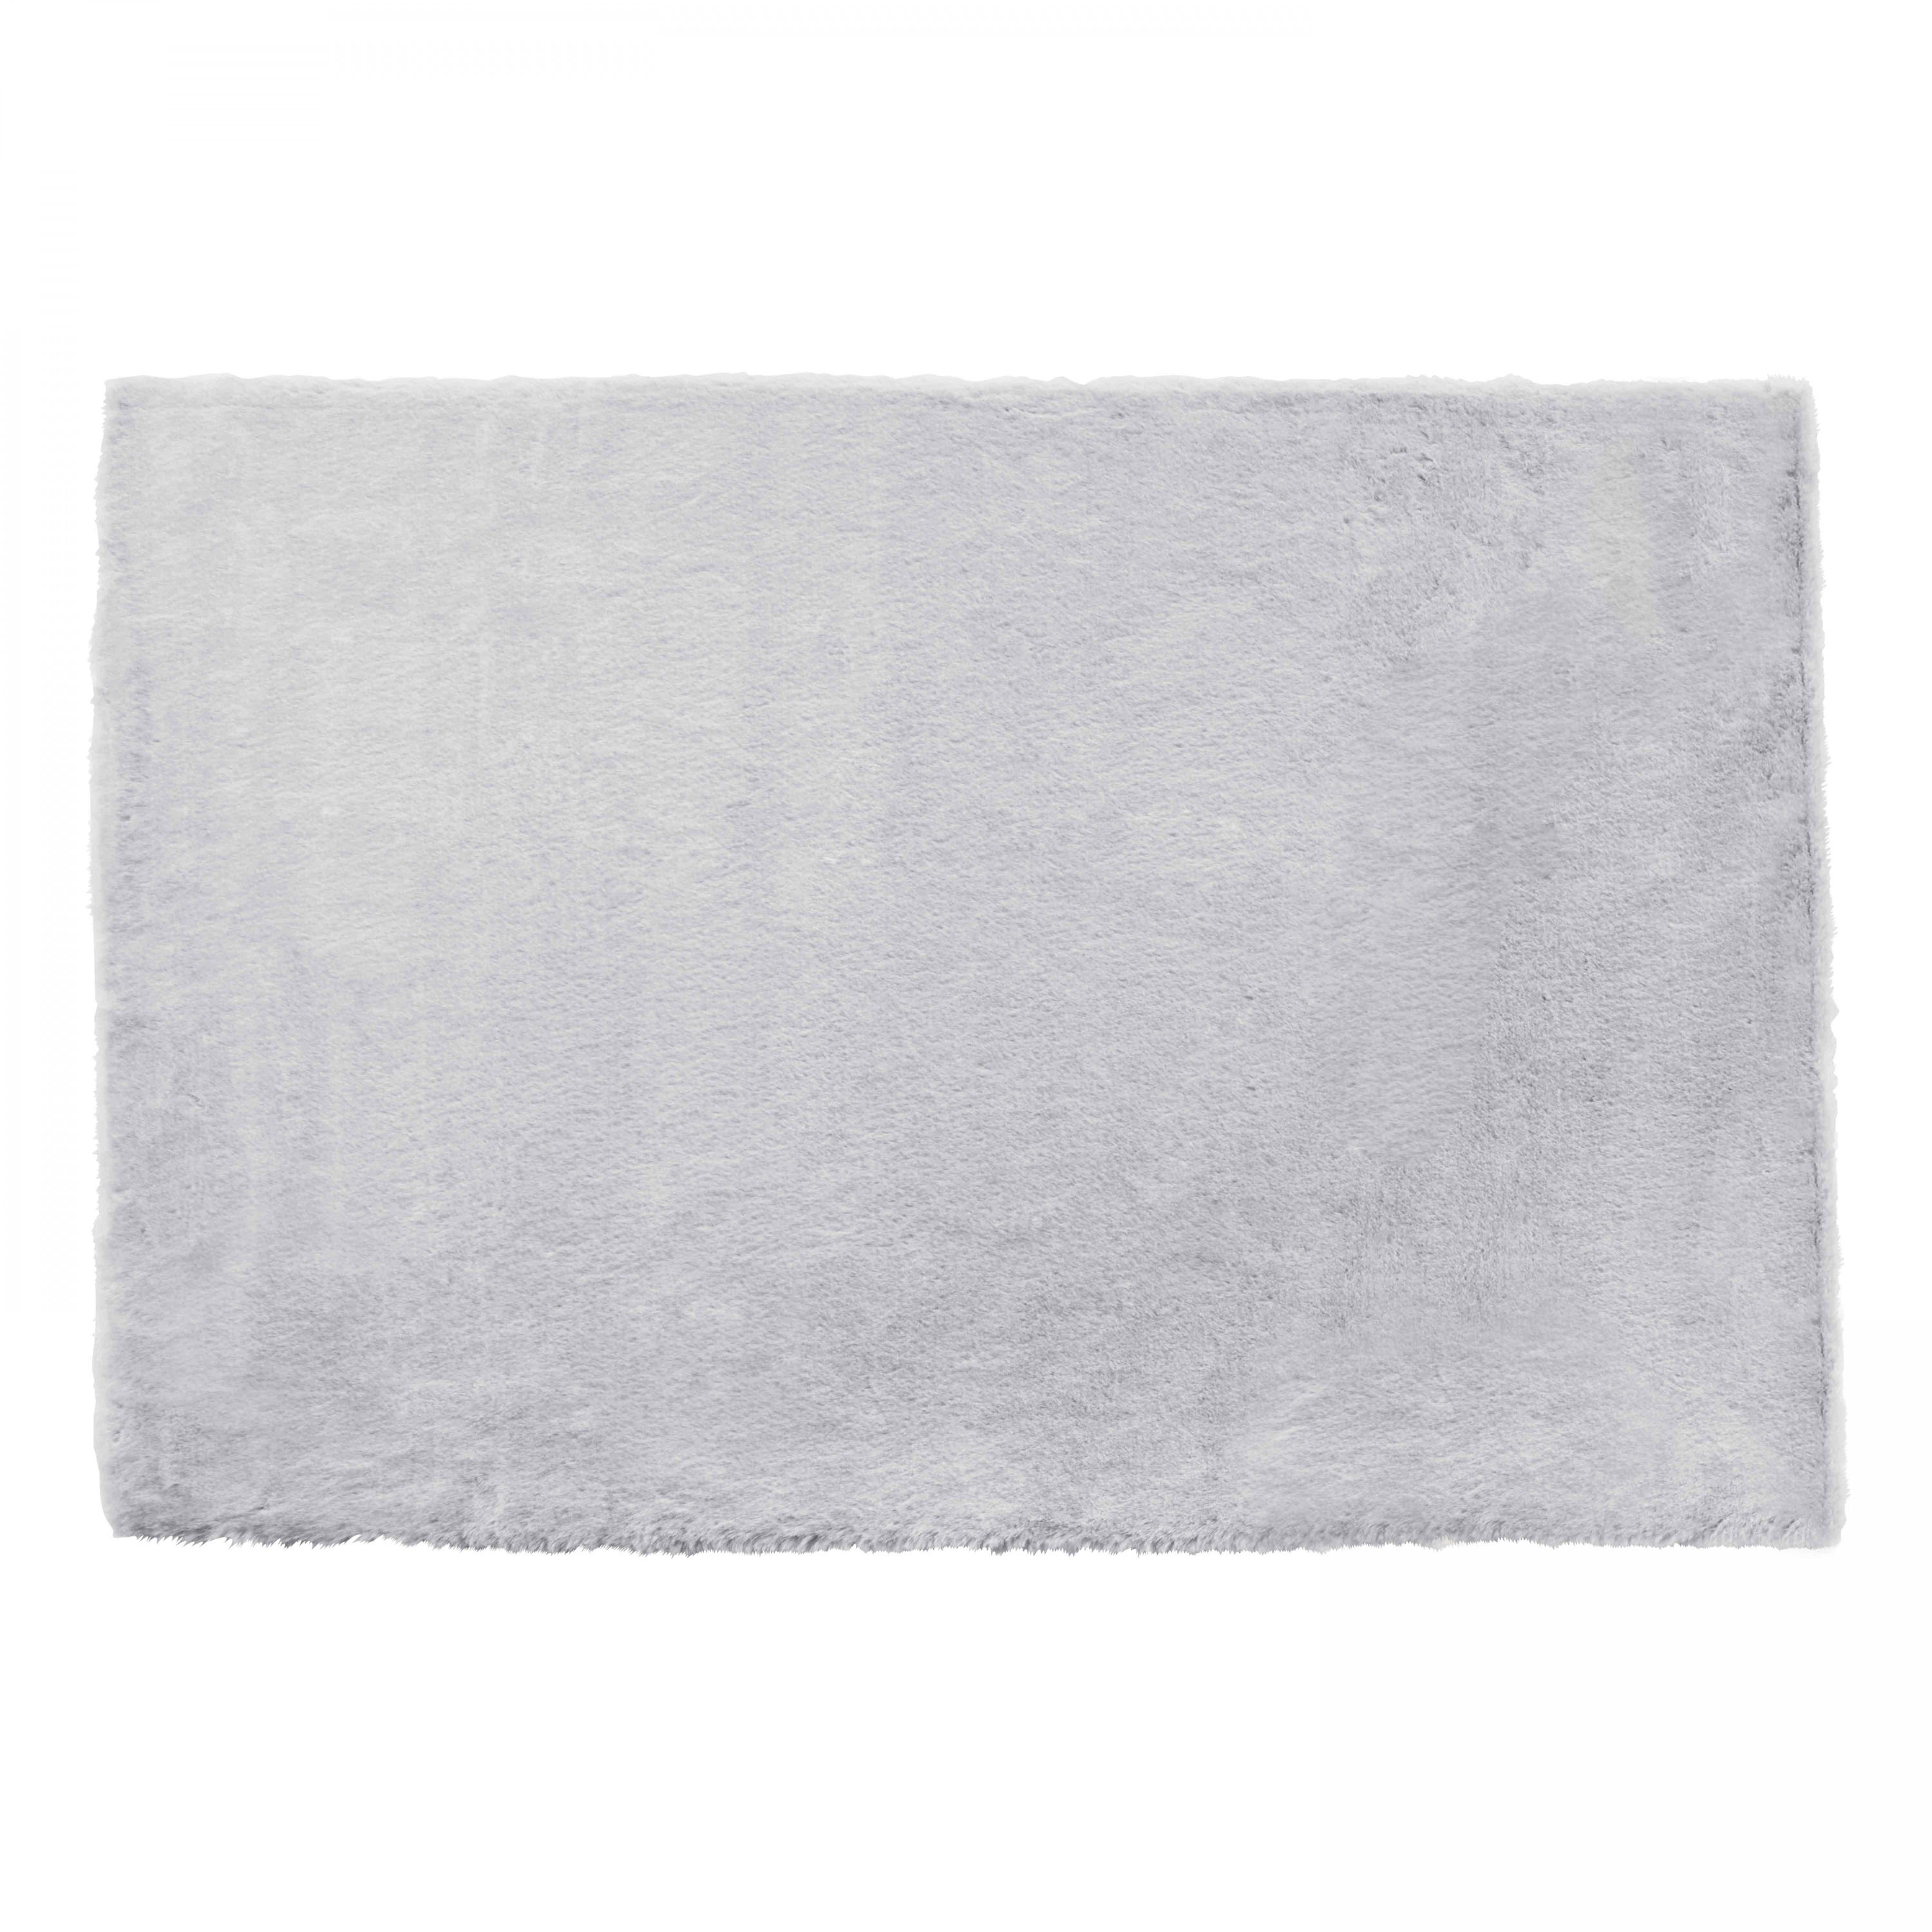 Tappeto rettangolare in finta pelliccia grigio chiaro 120 x 160 cm